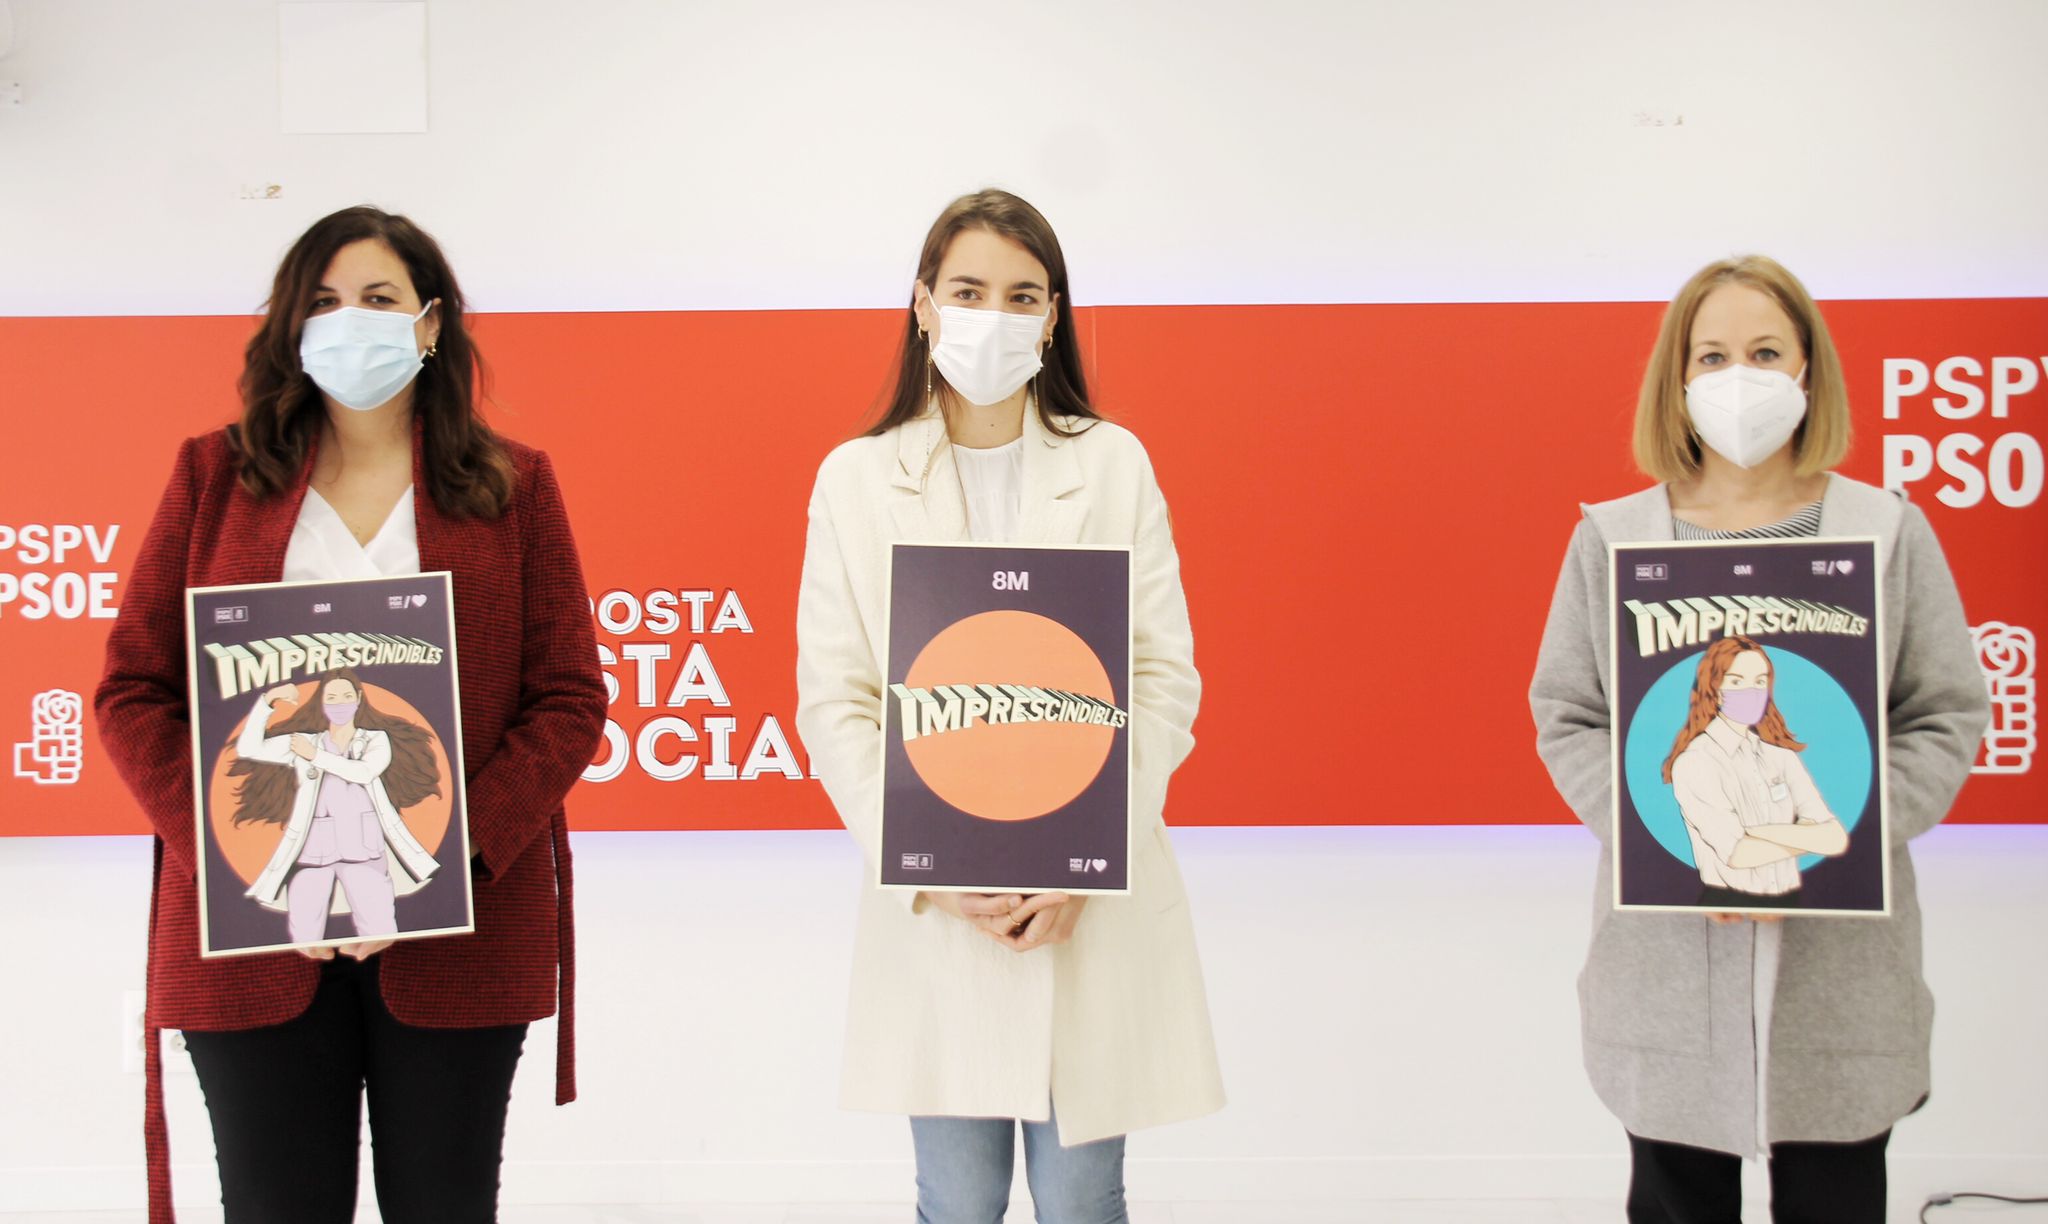 En este momento estás viendo El PSPV-PSOE presenta su campaña para el 8M para reivindicar que las mujeres “seguirán siendo imprescindibles tras la pandemia”